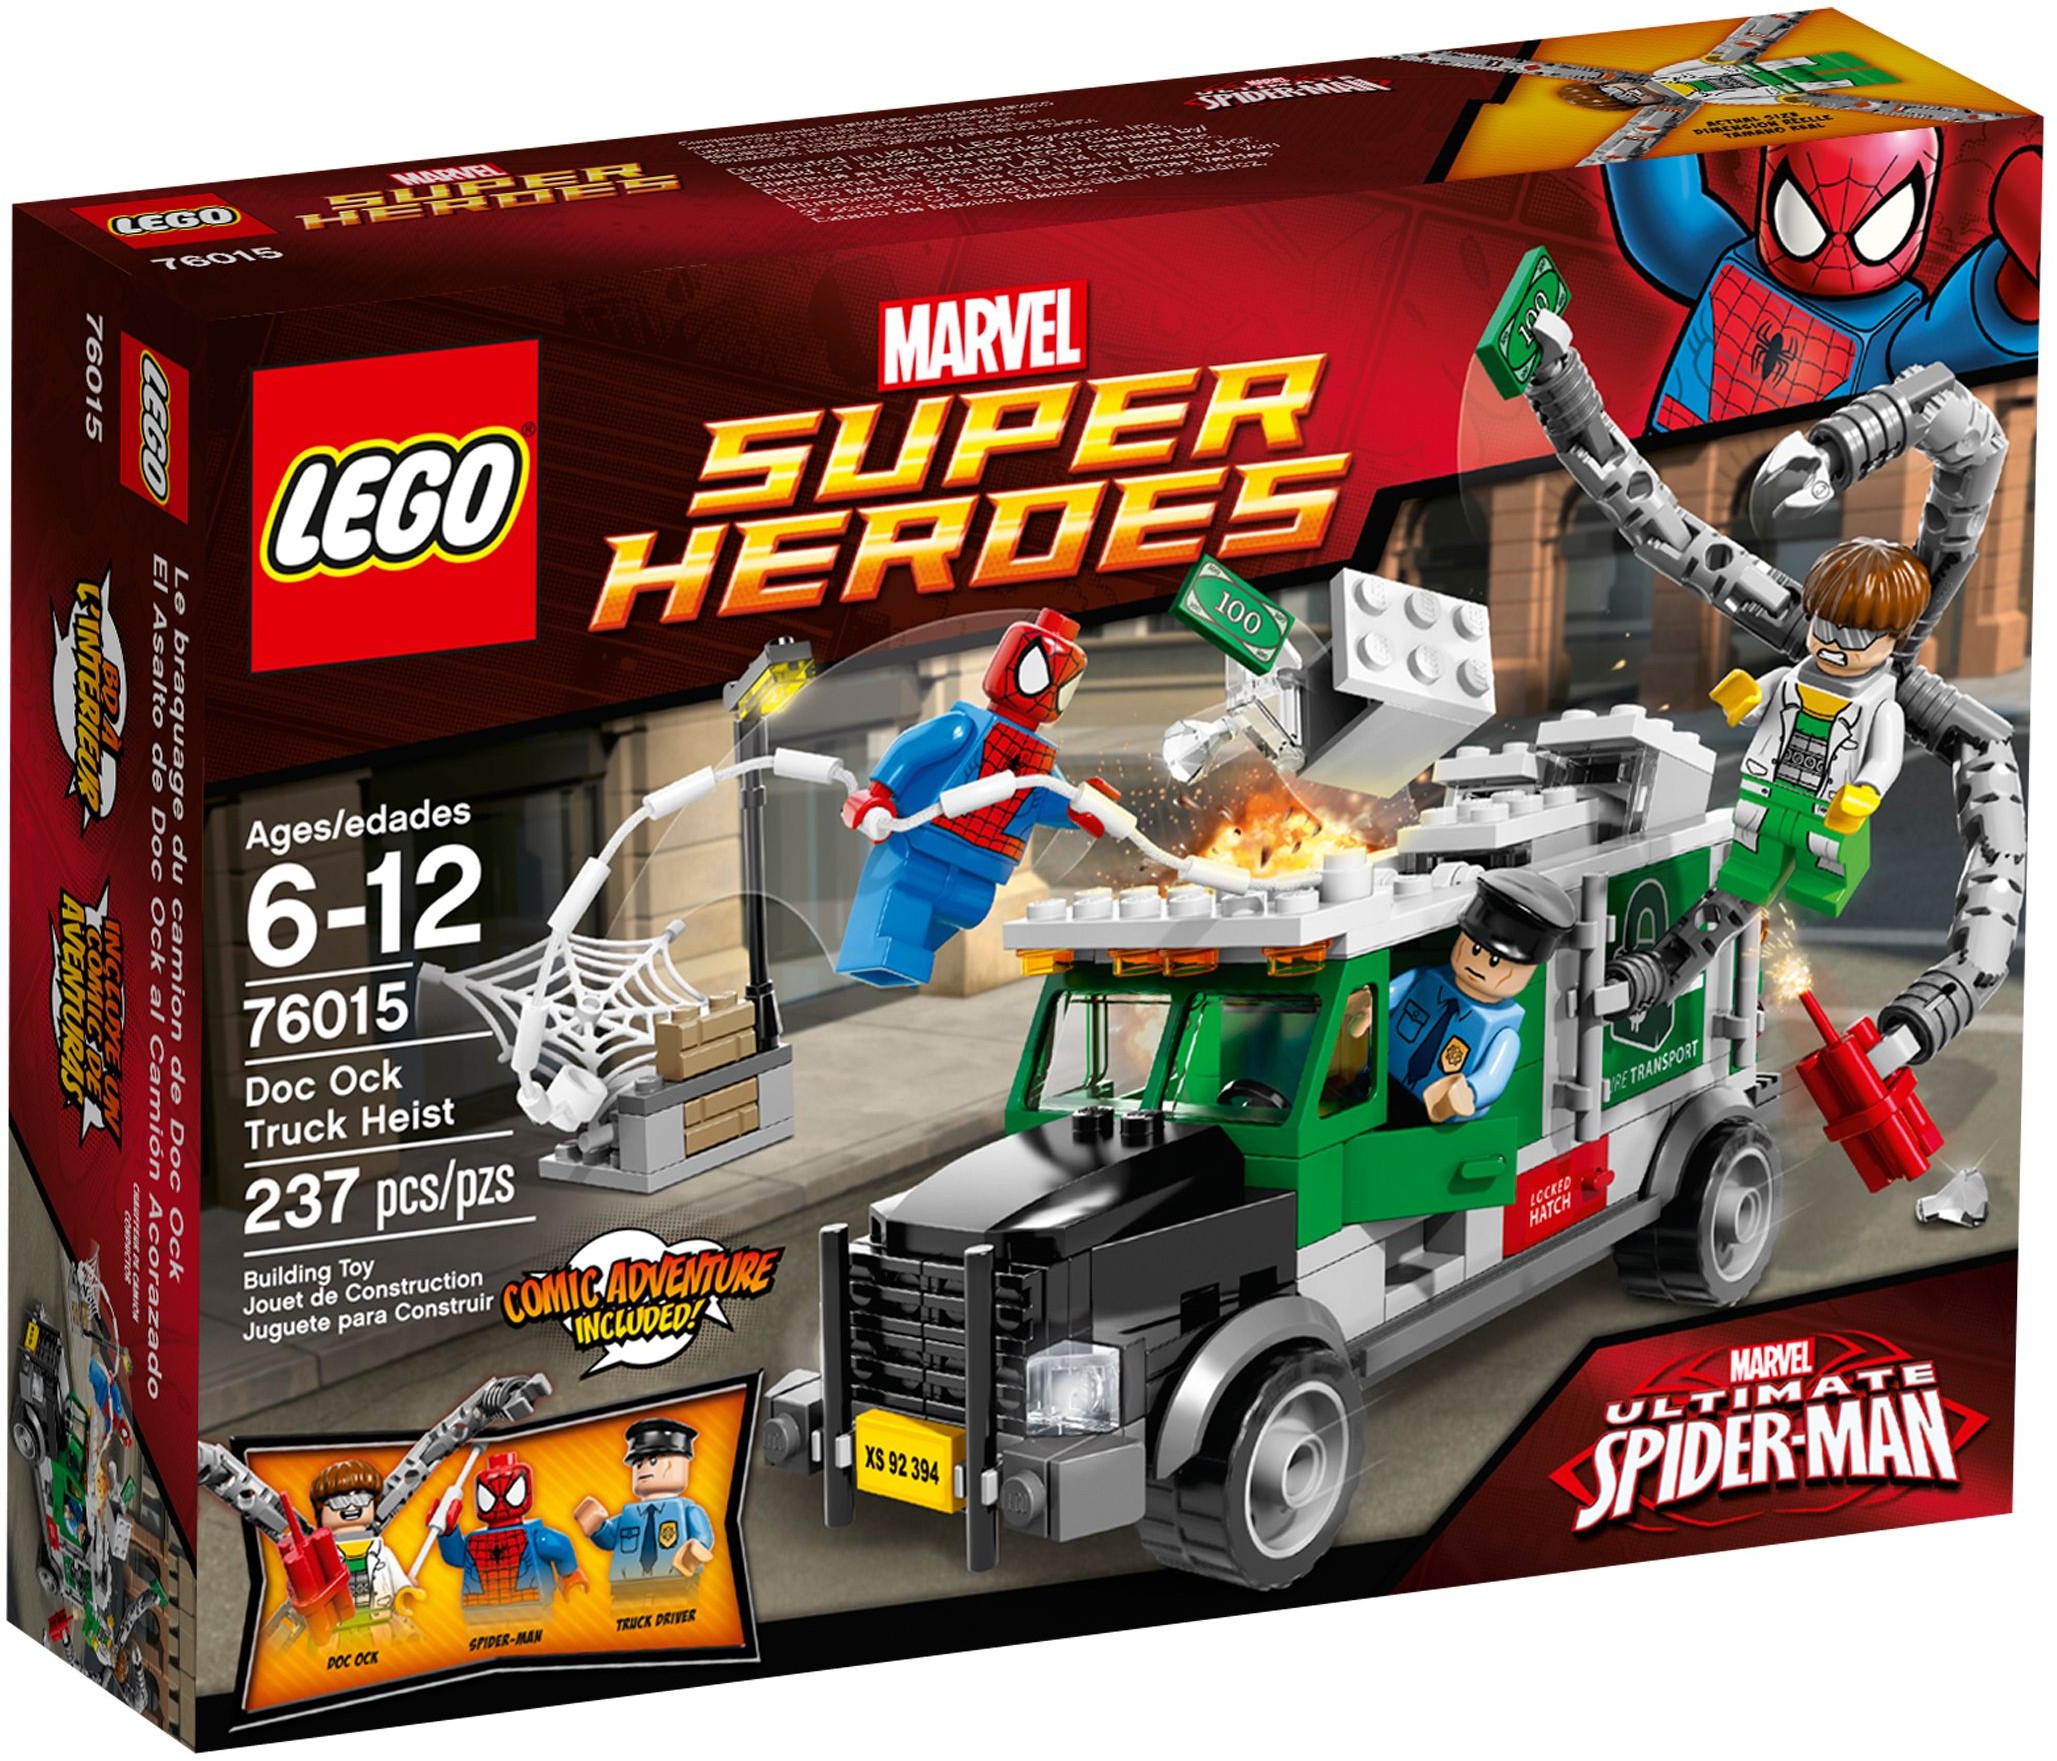 SPIDER-MAN DOC OCK TRUCK HEIST OCK LEGO 76015 SUPER HEROES 